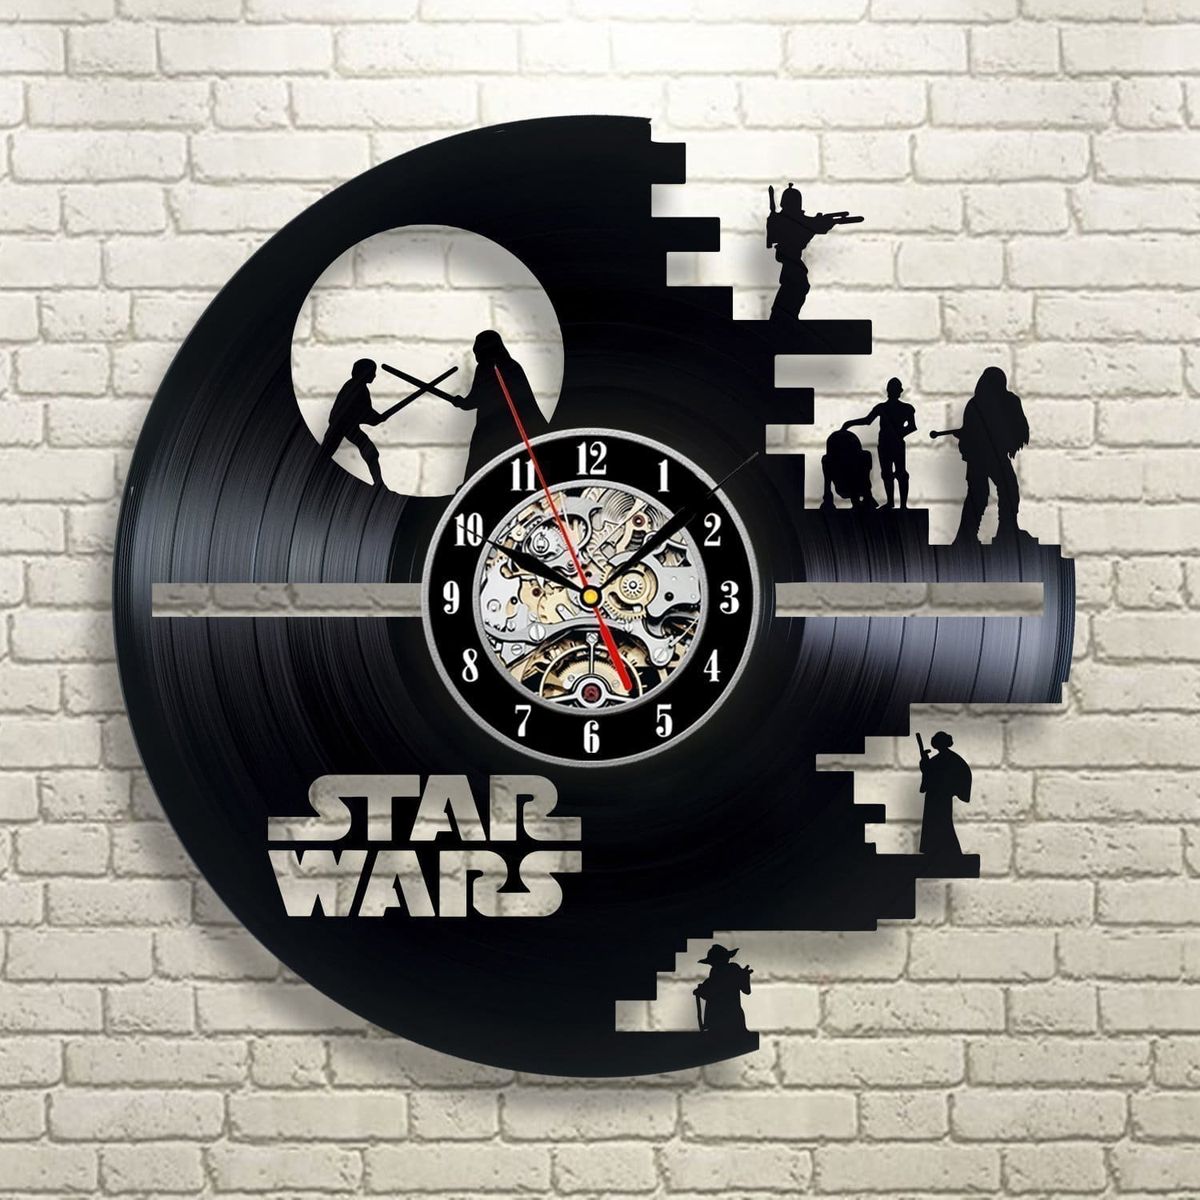 Tyto vinylové nástěnné hodiny jsou jedním z nejlepších dárků Star Wars